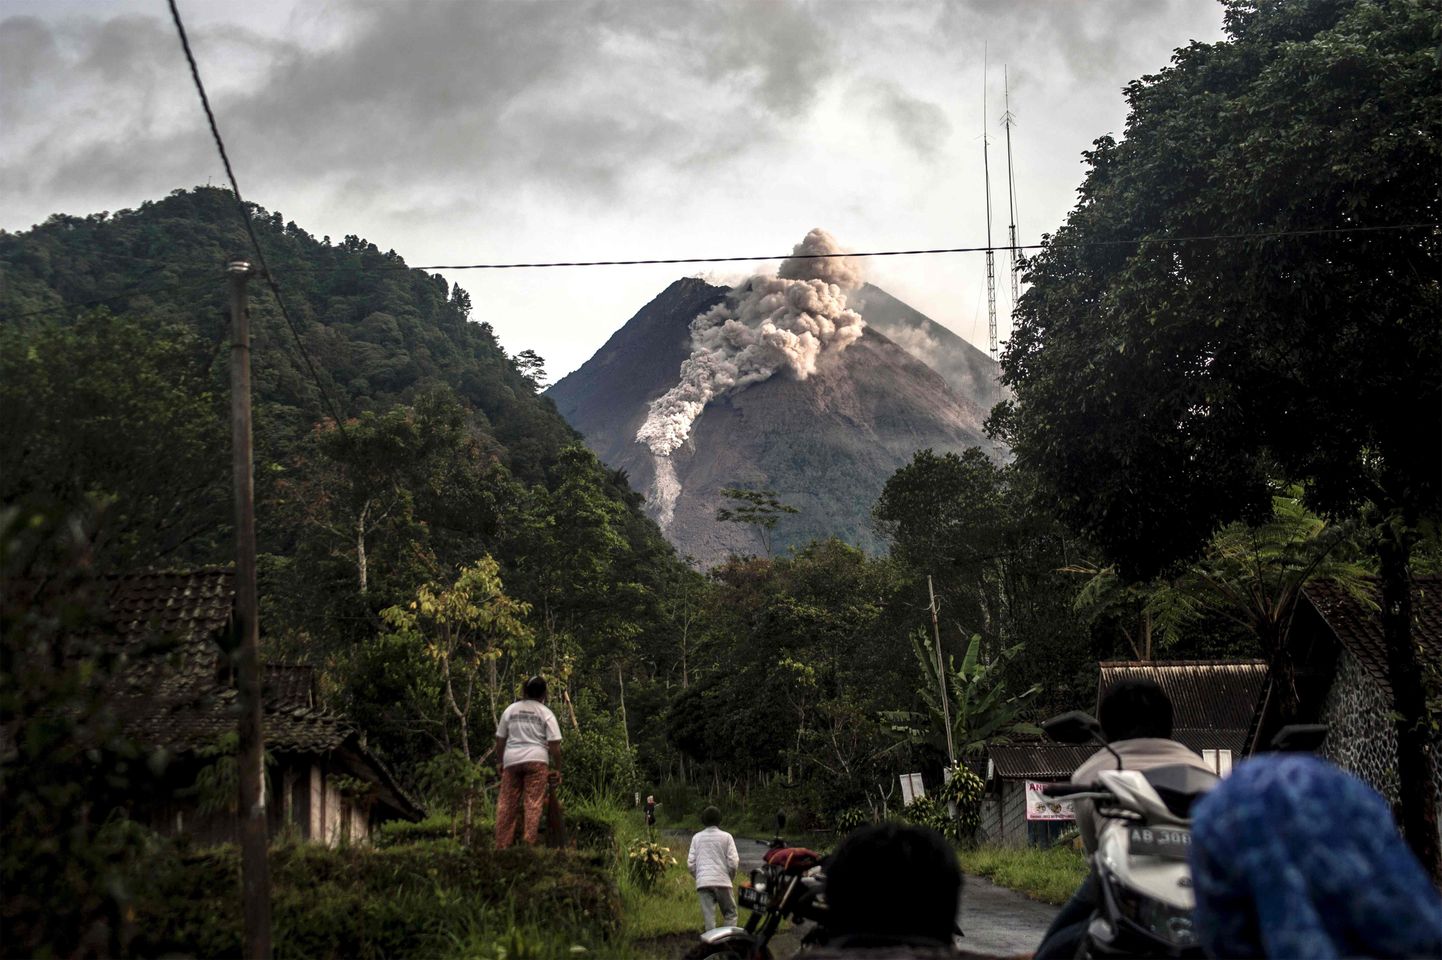 Indoneesias Jaava saarel asuv Merapi vulkaan 27. jaanuar 2021.